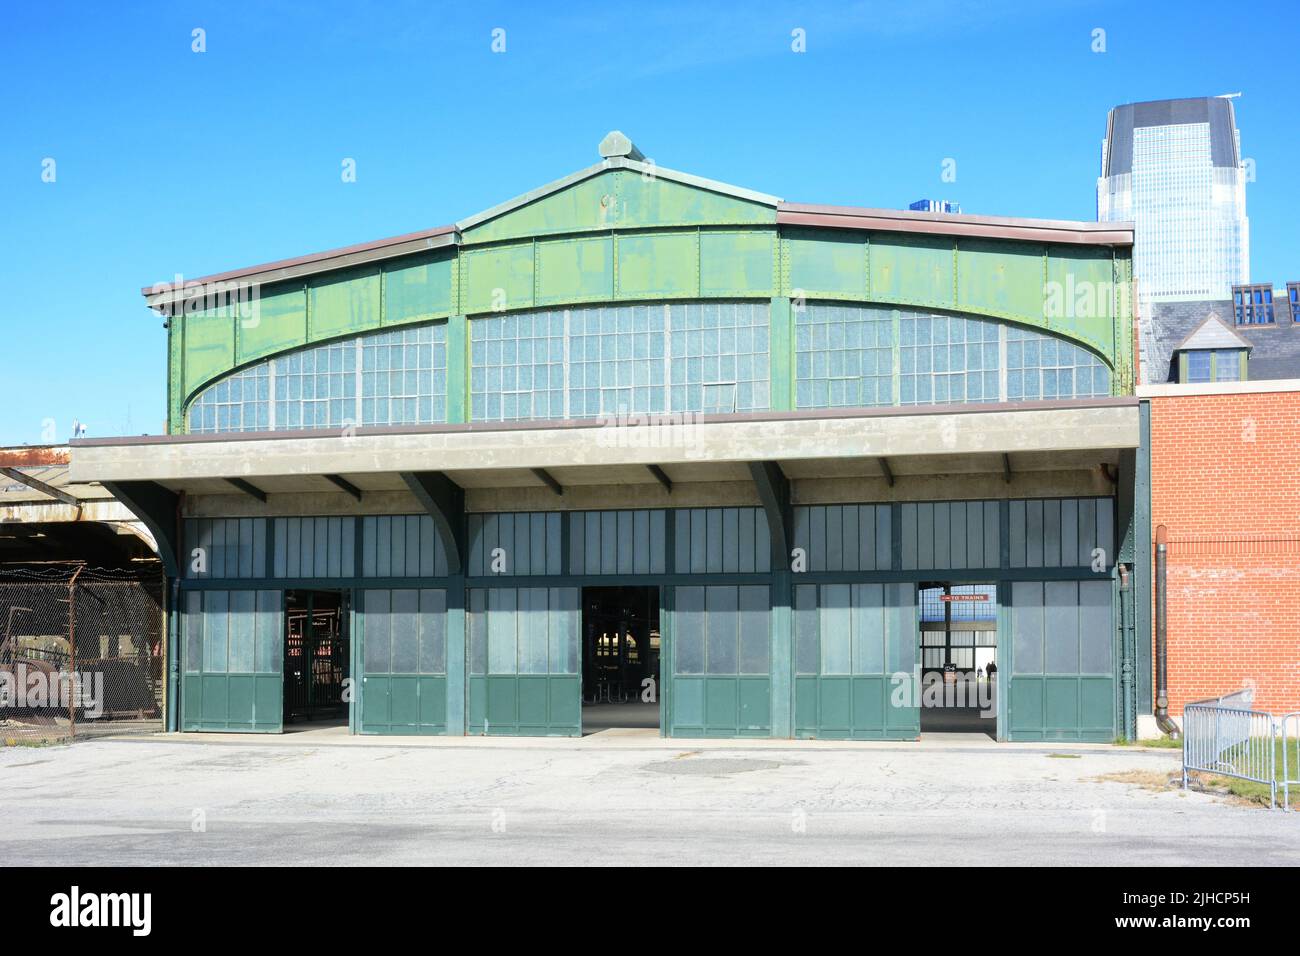 JERSEY CITY, New Jersey - 04 Sep 2019: Die historische Central Railroad von New Jersey Terminal, im Liberty State Park, beherbergt heute das Ticket für Windows Stockfoto